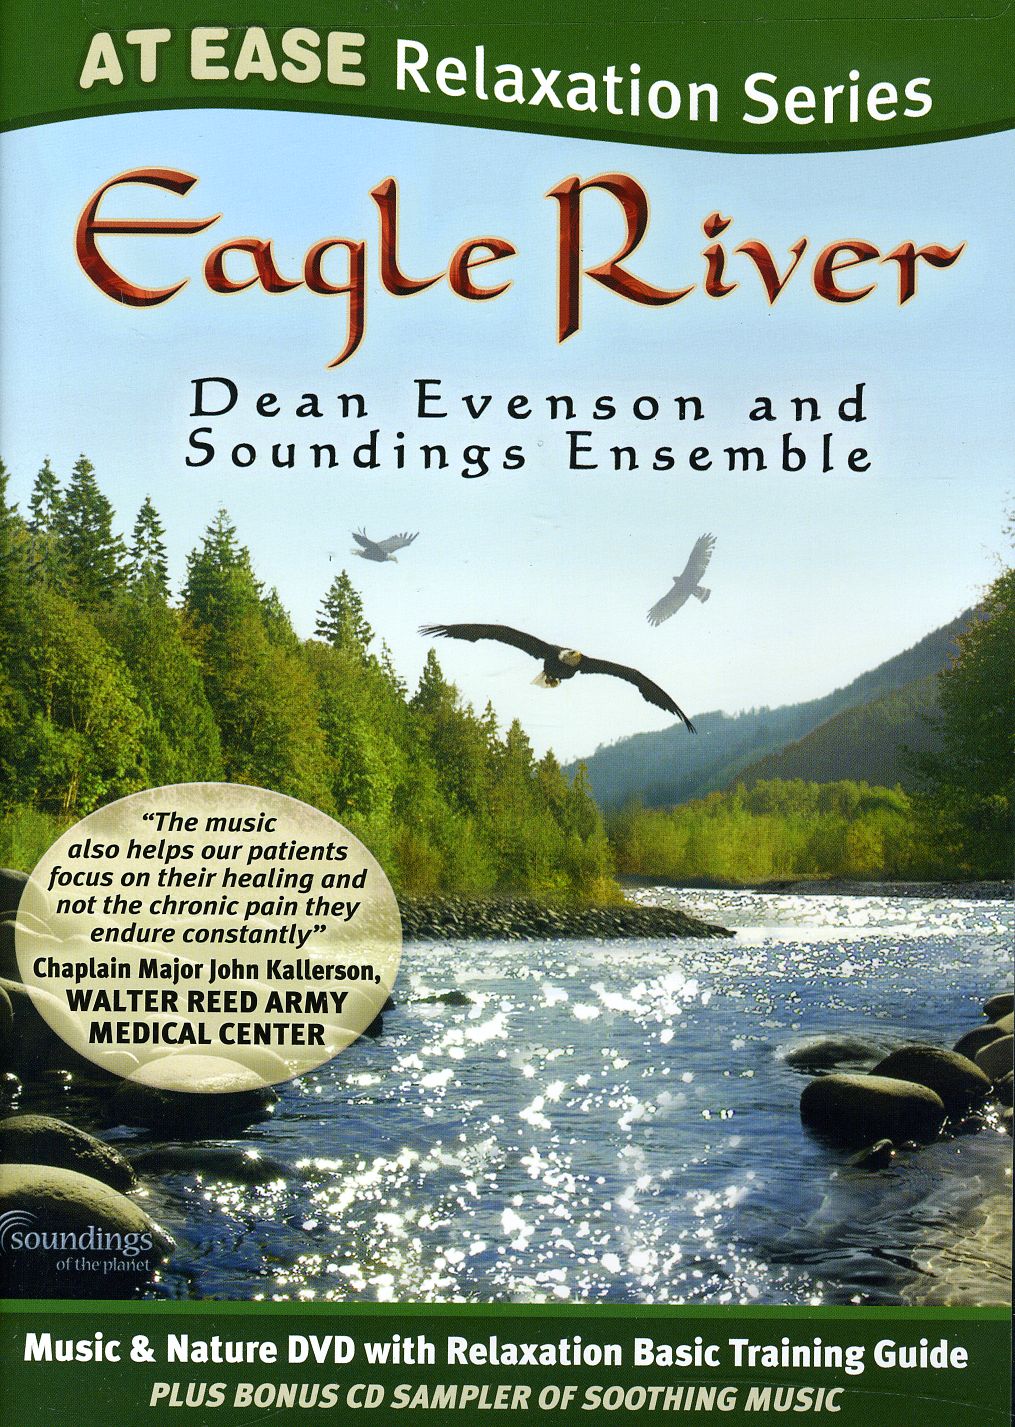 AT EASE: EAGLE RIVER